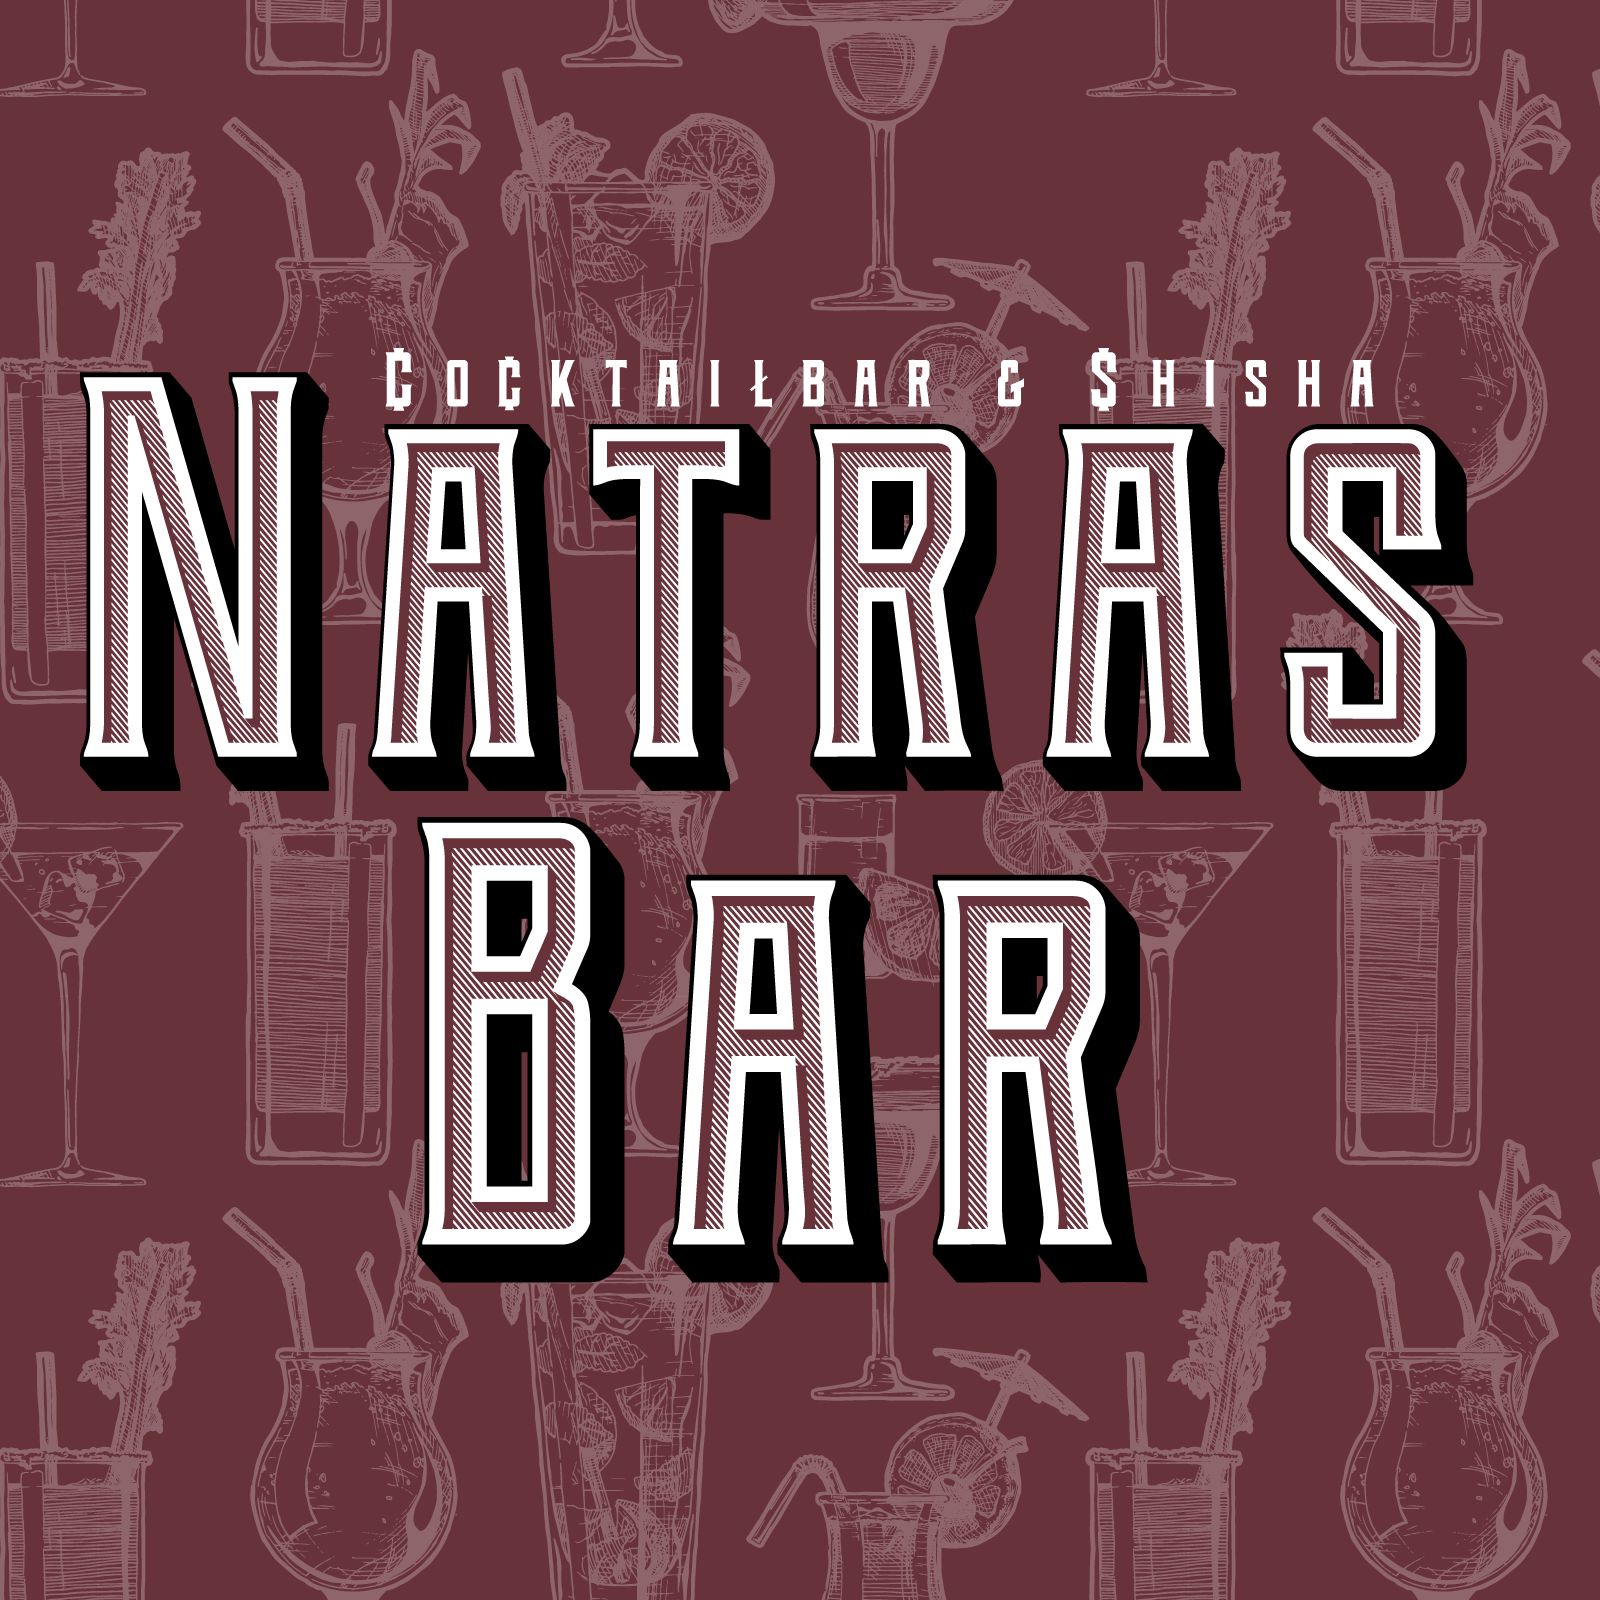 Natras Bar